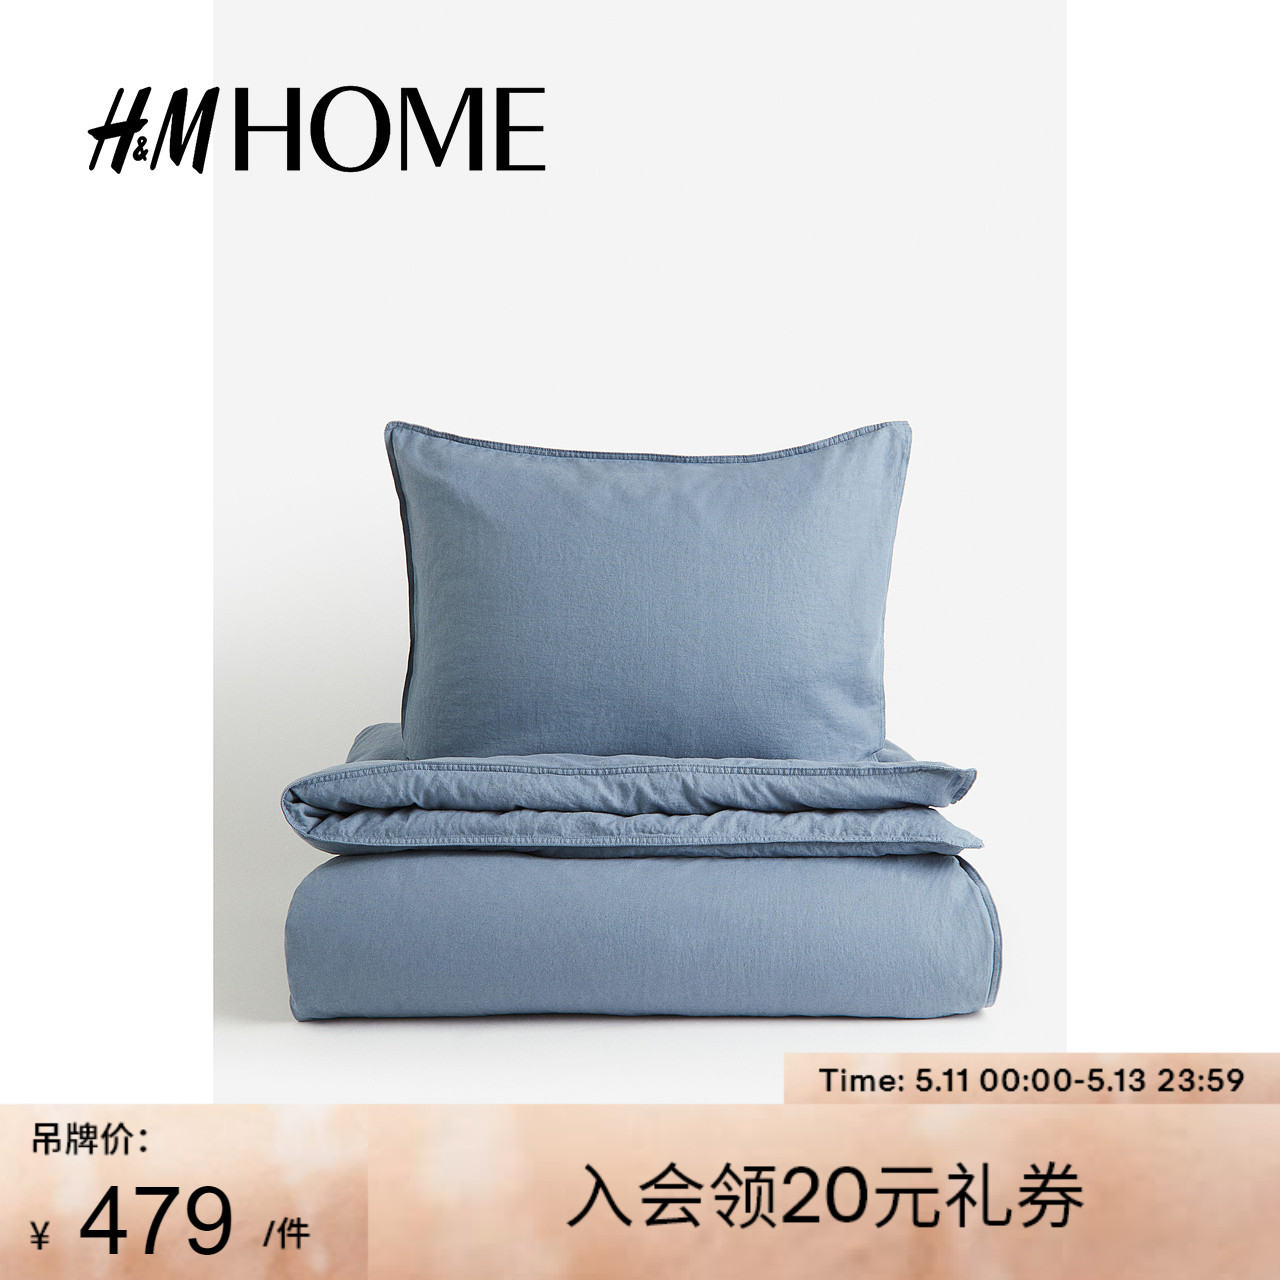 HM HOME床上用品枕套亲肤柔软舒适亚麻混纺单人被套组合1127676 床上用品 被套 原图主图